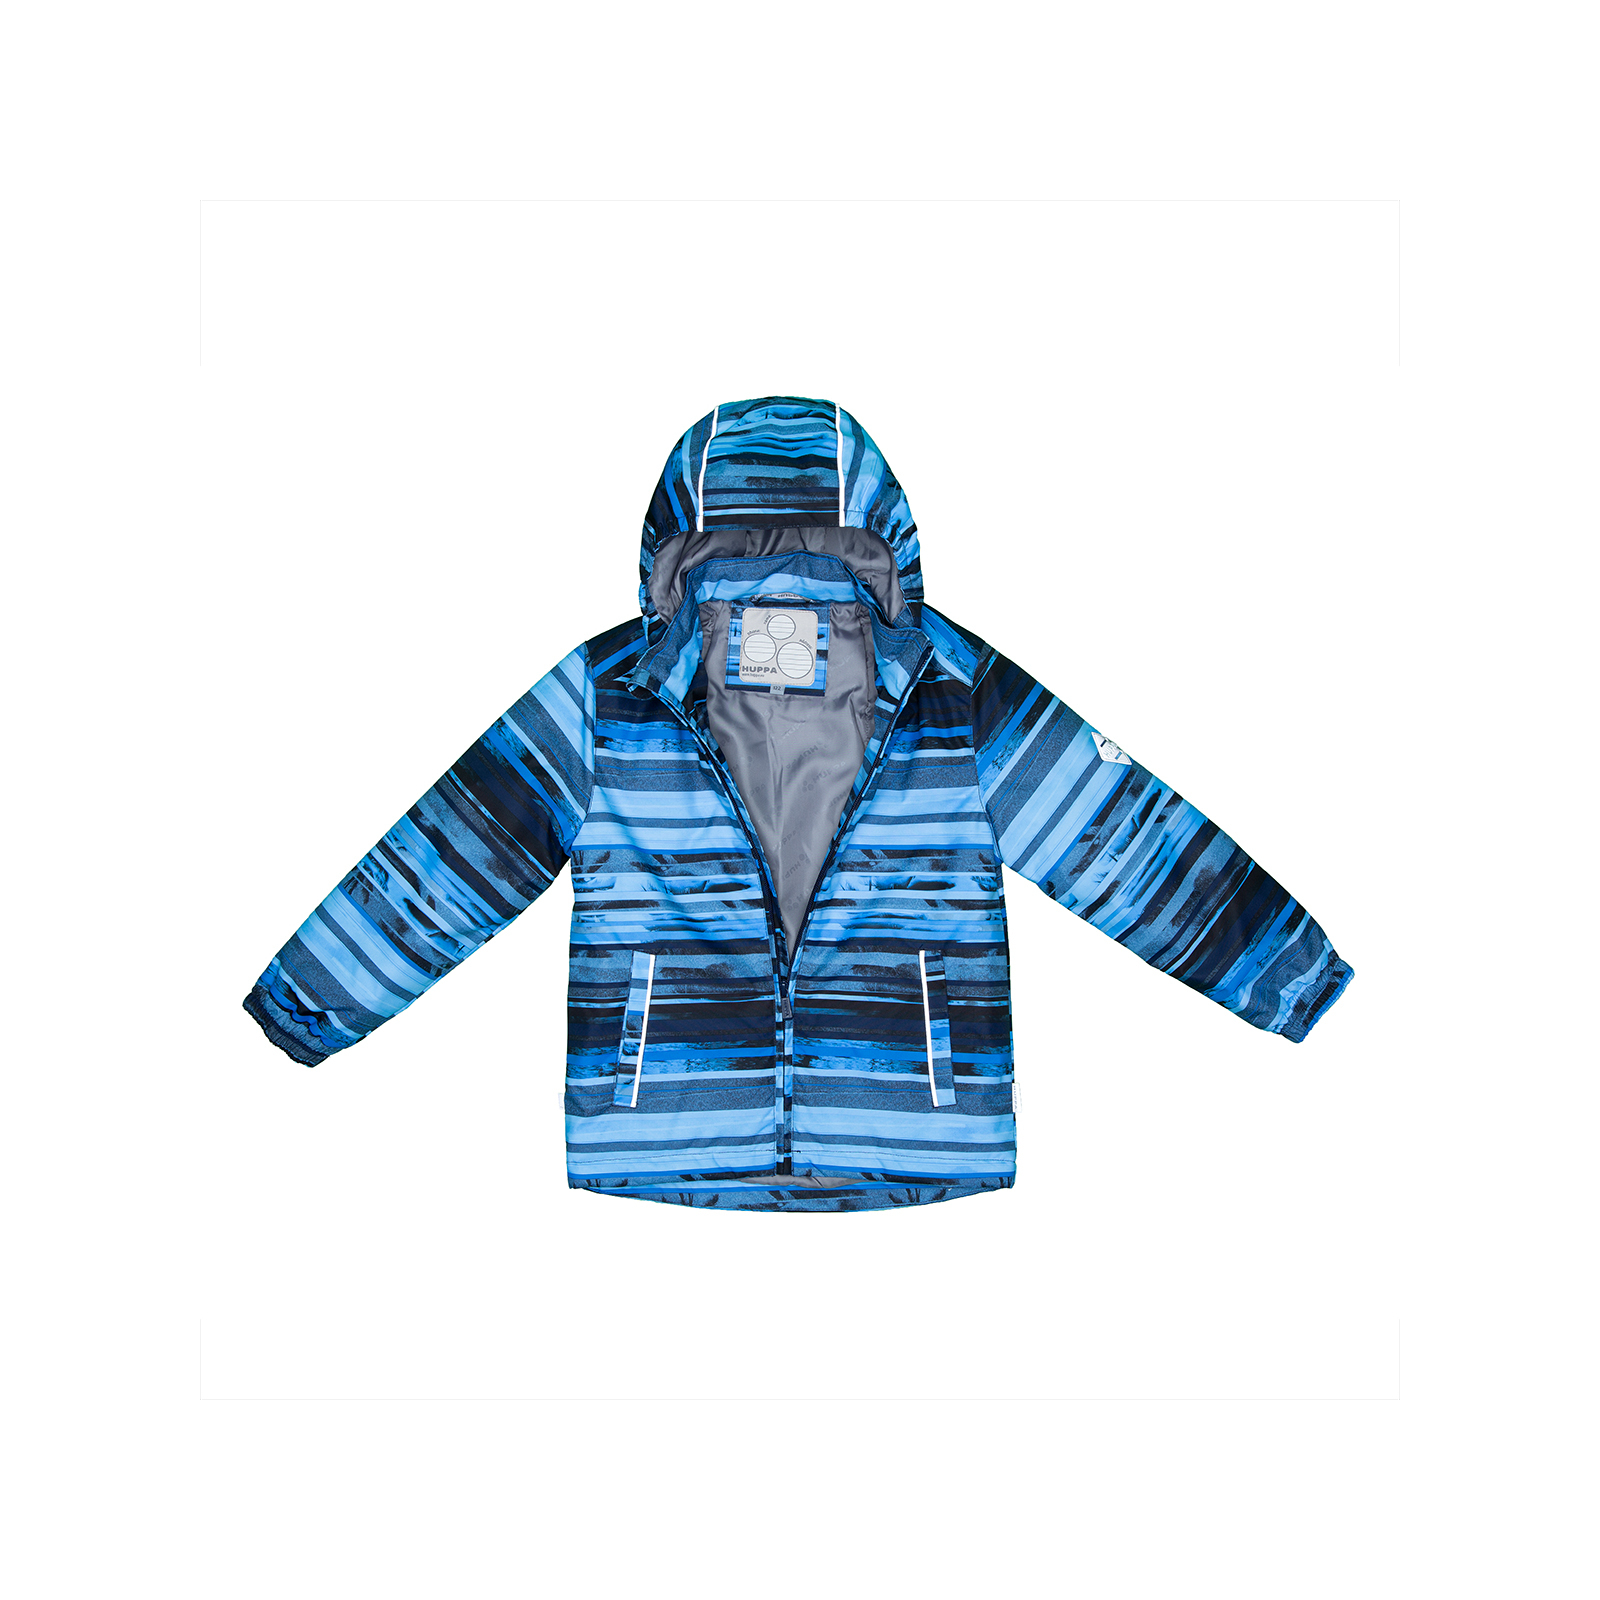 Комплект верхней одежды Huppa YOKO 1 41190114 синий с принтом/тёмно-синий 134 (4741468761350) изображение 5